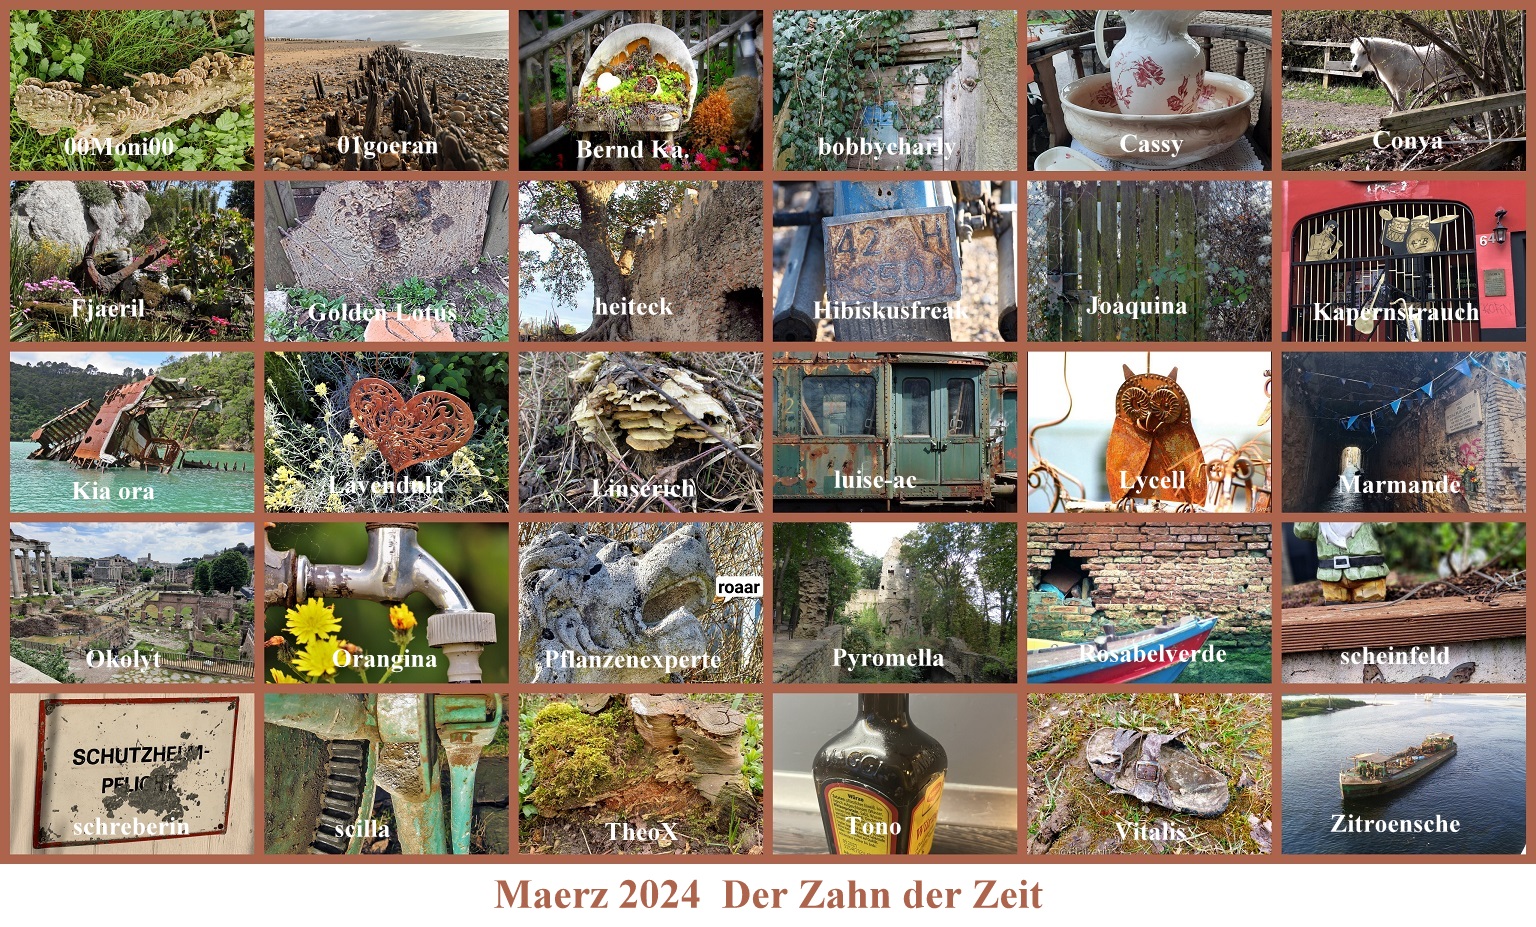 2024-maerz-der-zahn-der-zeit-copy-jpg.765365